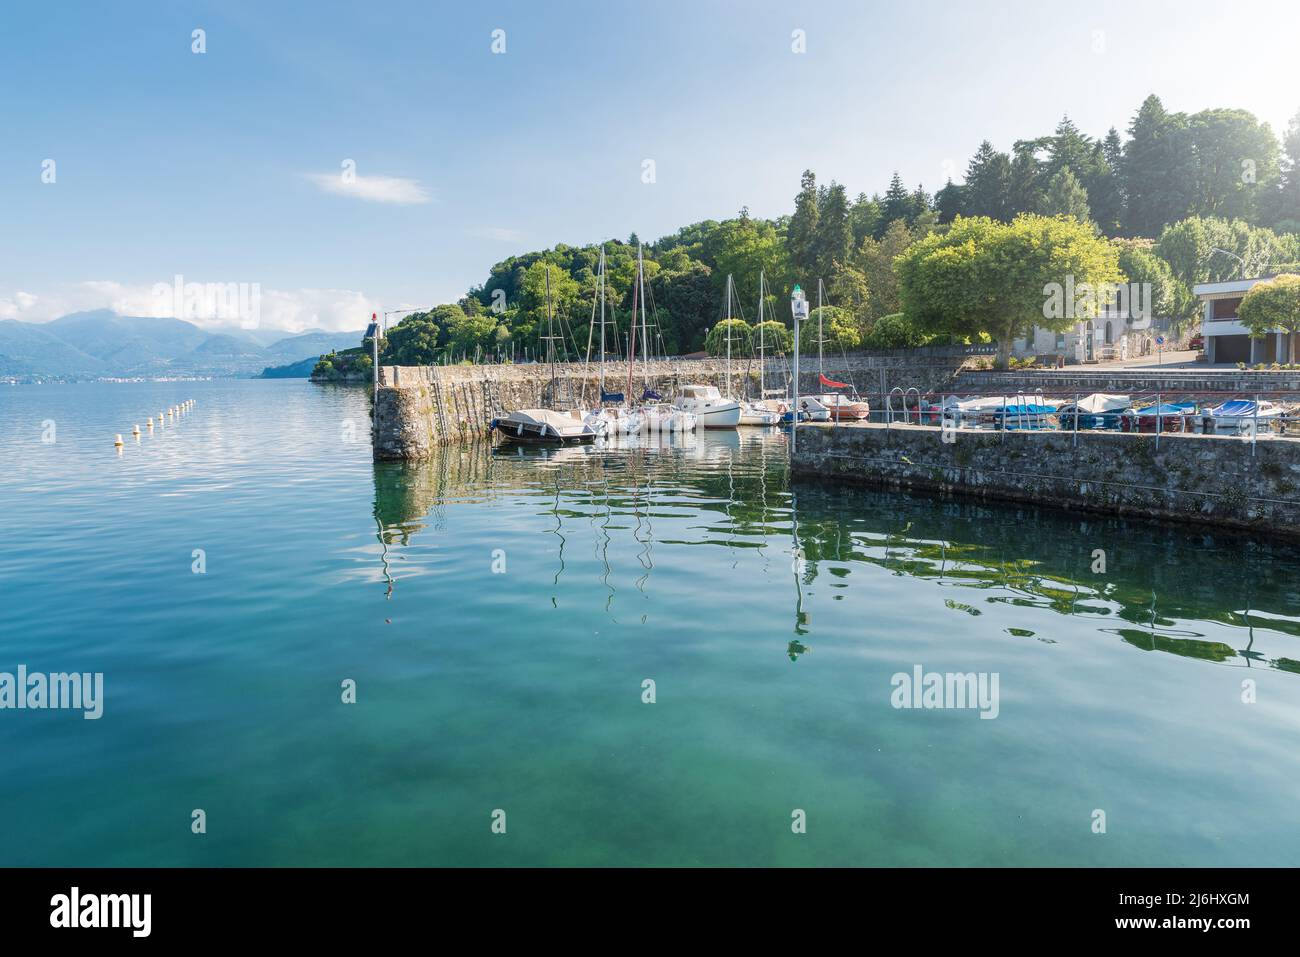 Pequeño puerto típico en un gran lago en el norte de Italia. Lago Maggiore a orillas del lago de la ciudad de Ispra con barcos amarrados. Paisaje veraniego Foto de stock